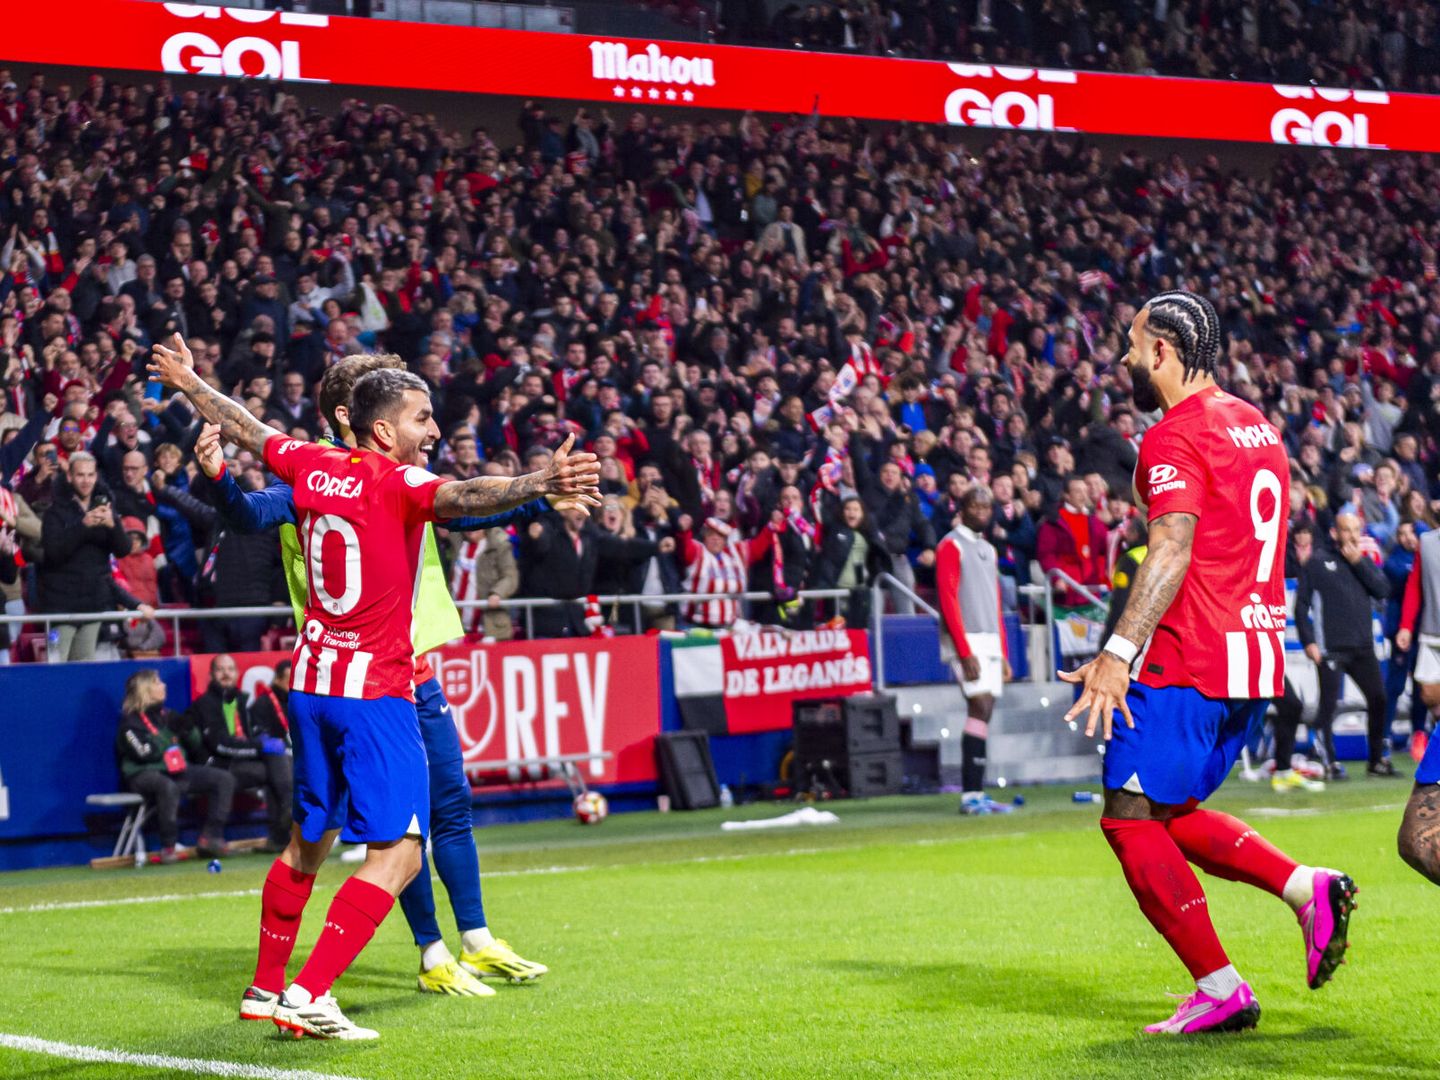 El Atlético de Madrid pasa a 'semis' con un gol de Depay